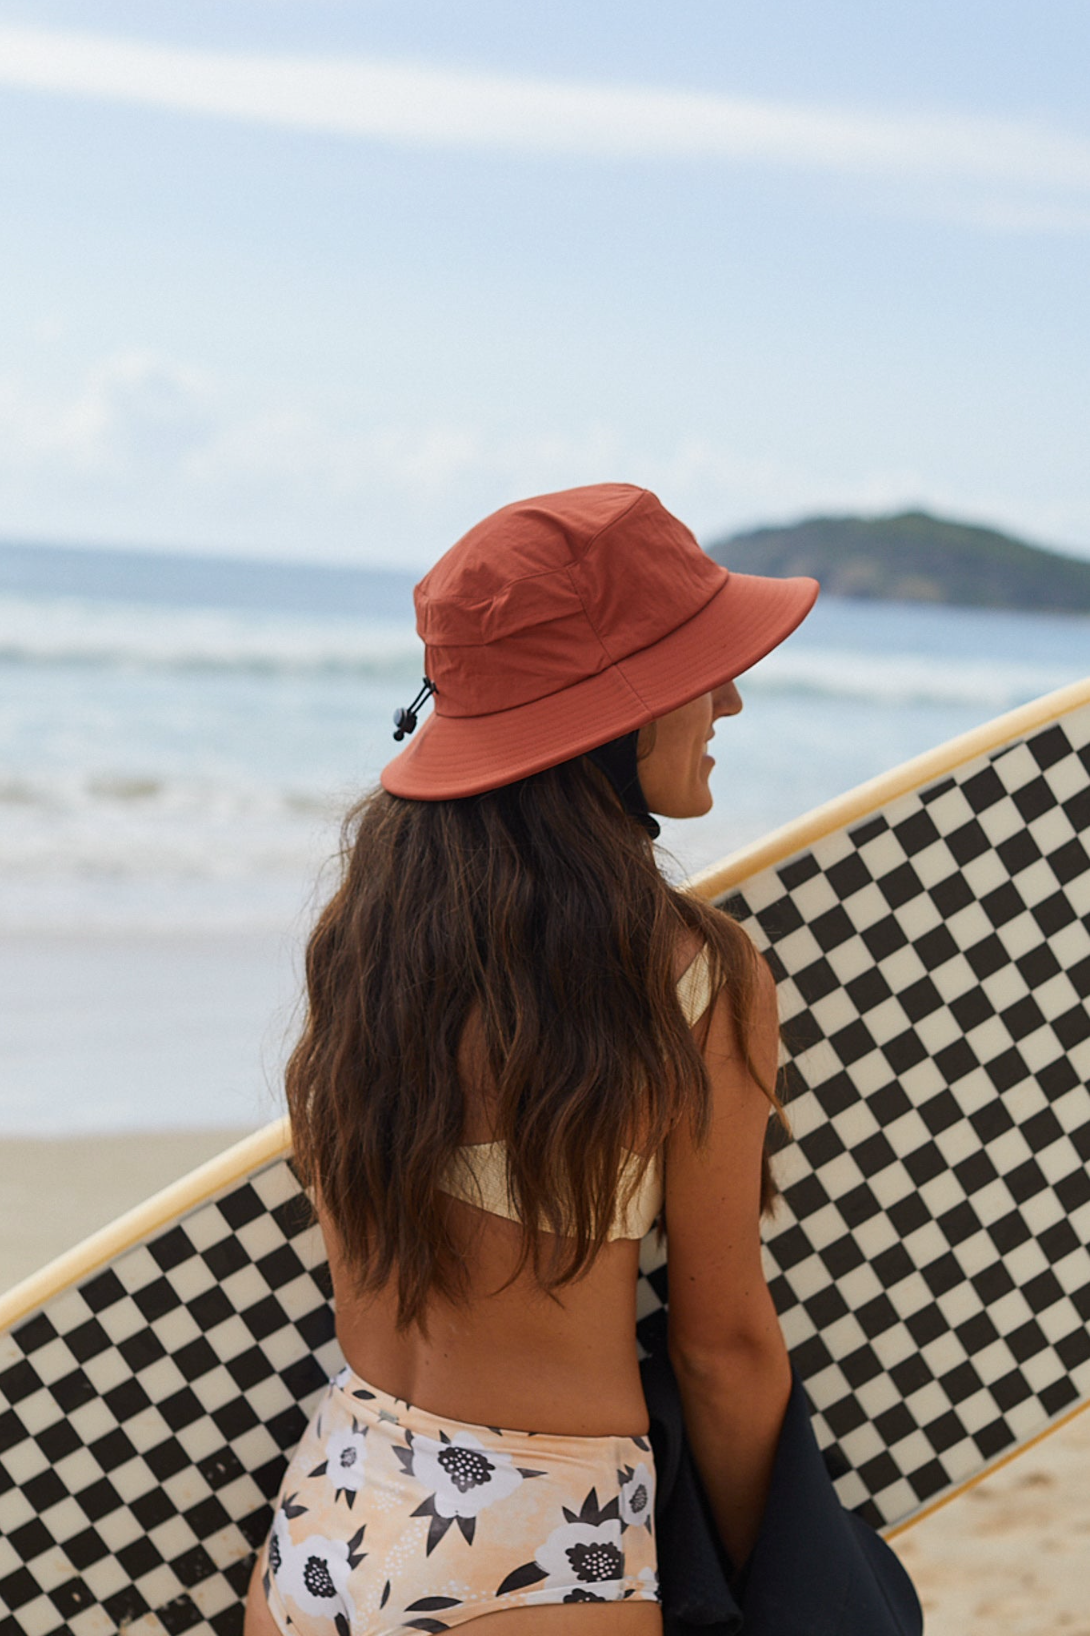 Surf Hat Brands We Love – Salt Gypsy, 56% OFF